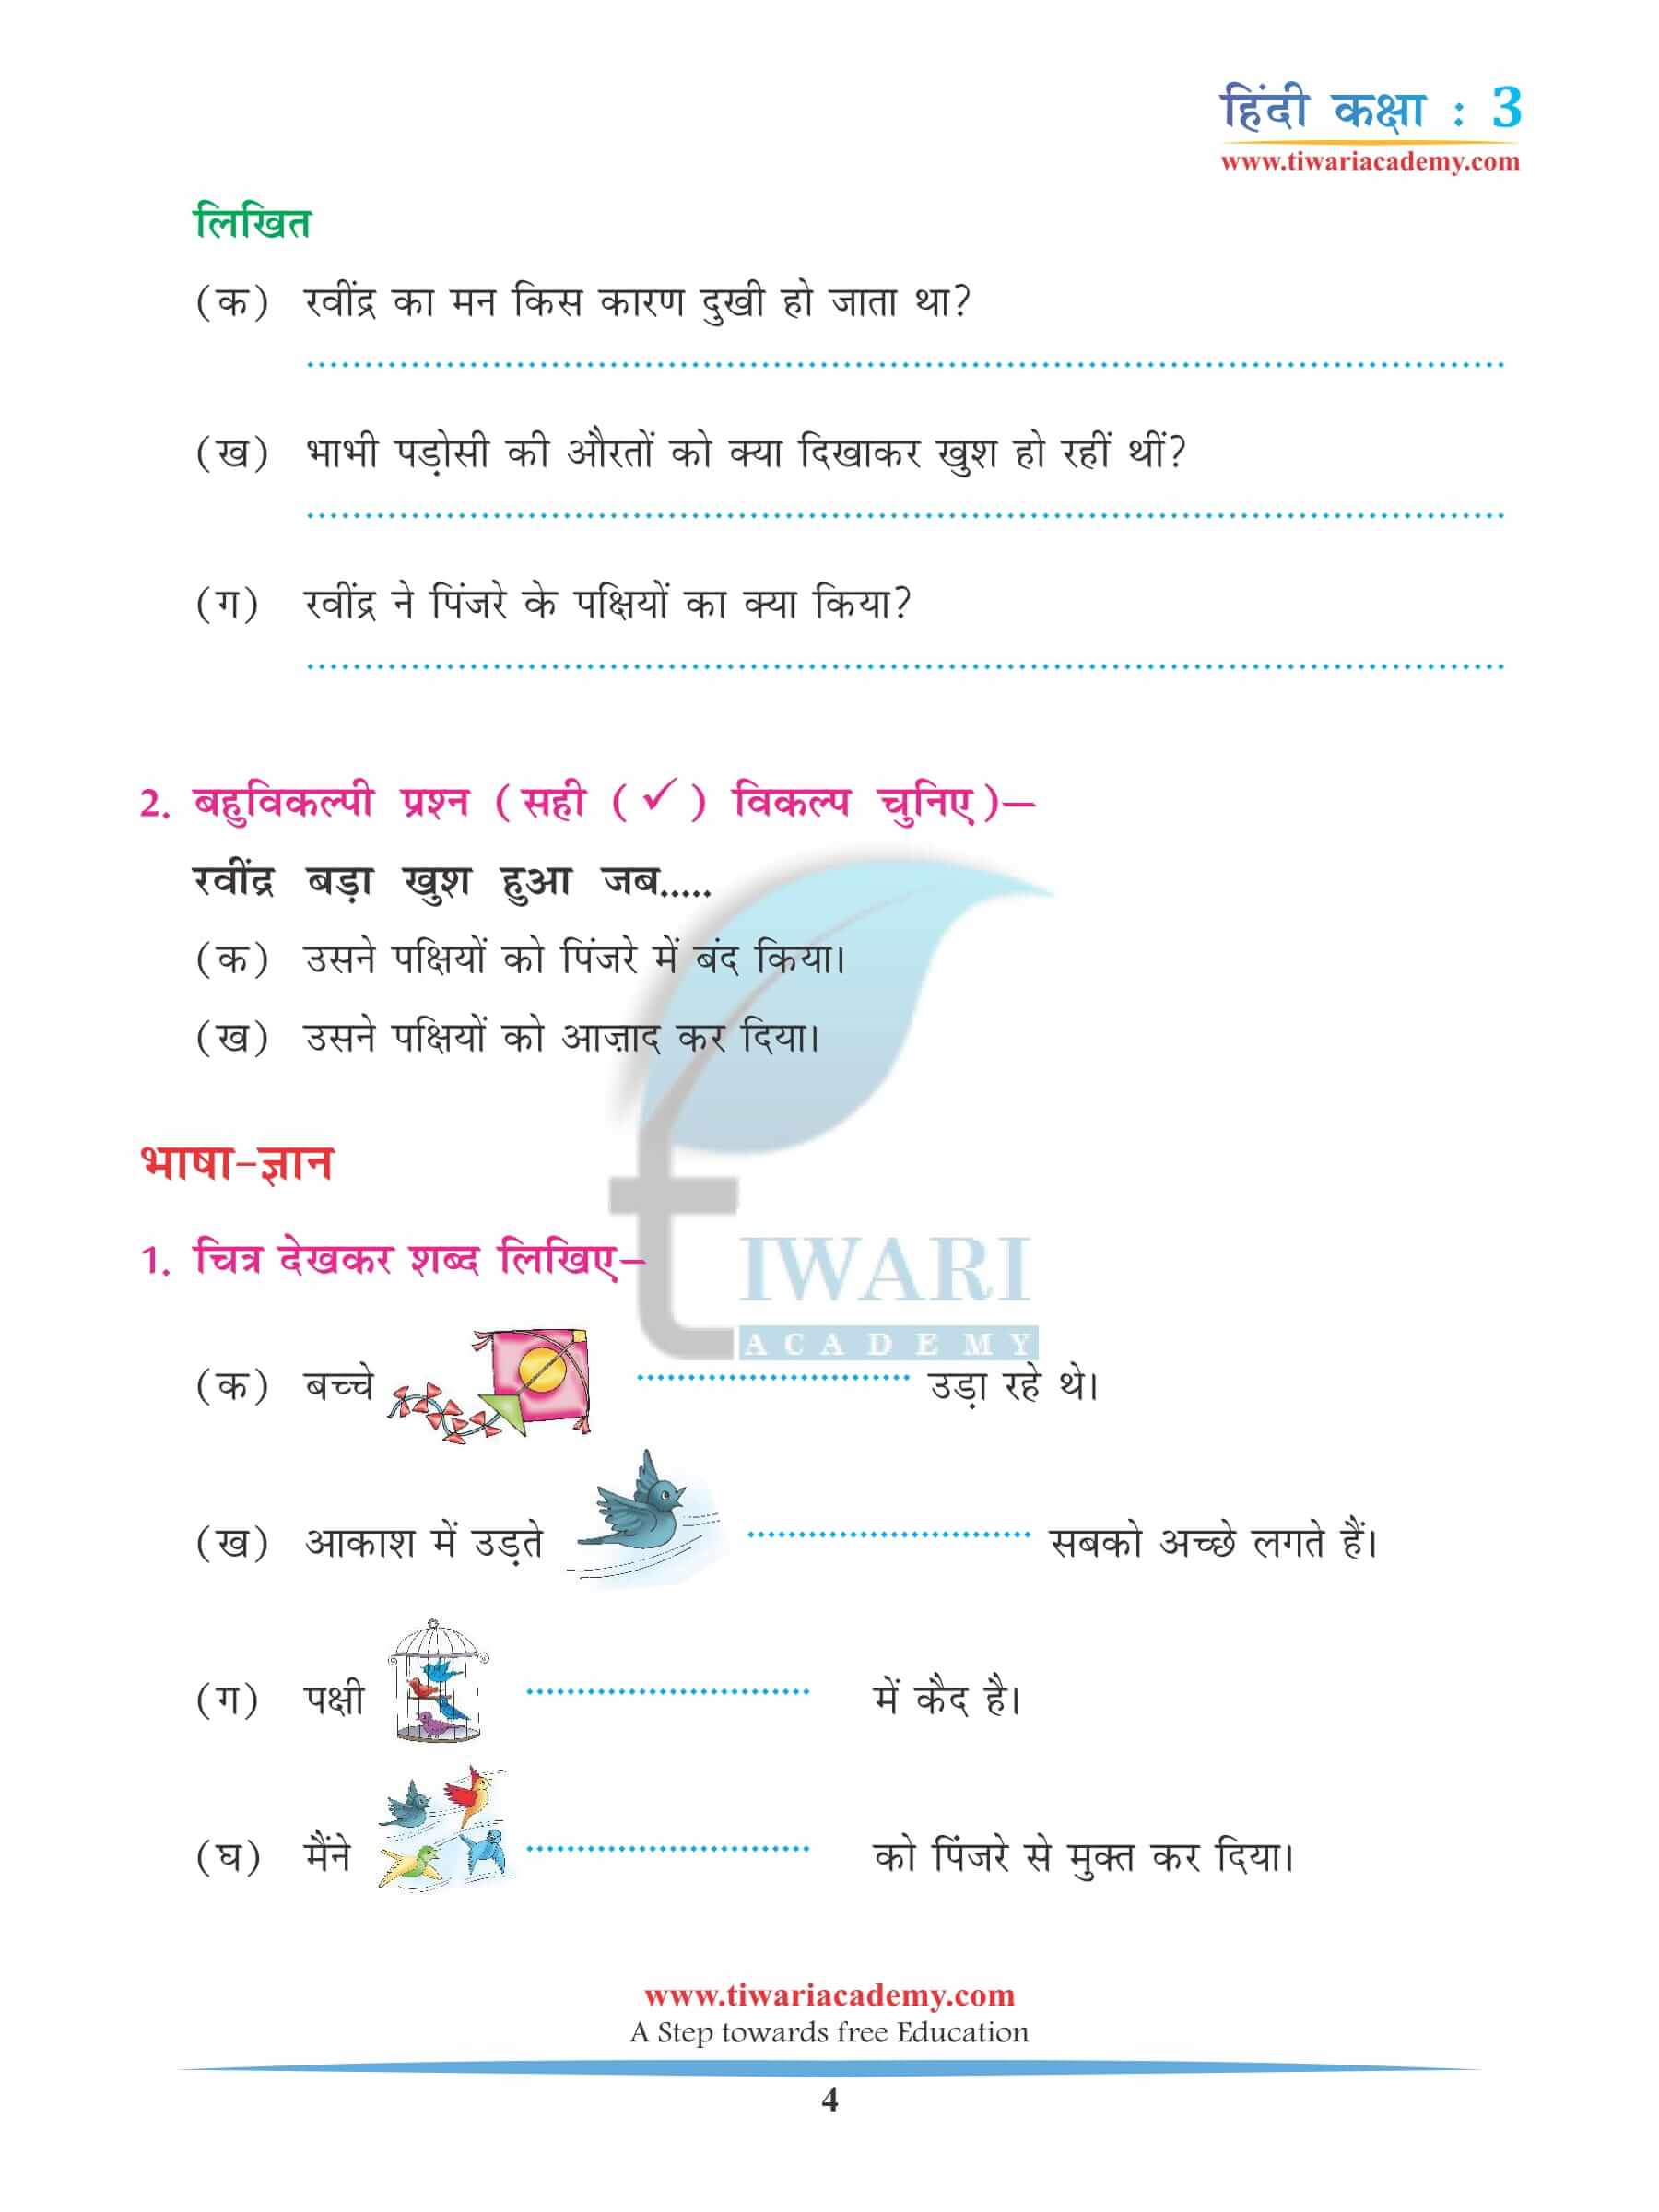 कक्षा 3 हिंदी अध्याय 6 अभ्यास के प्रश्न